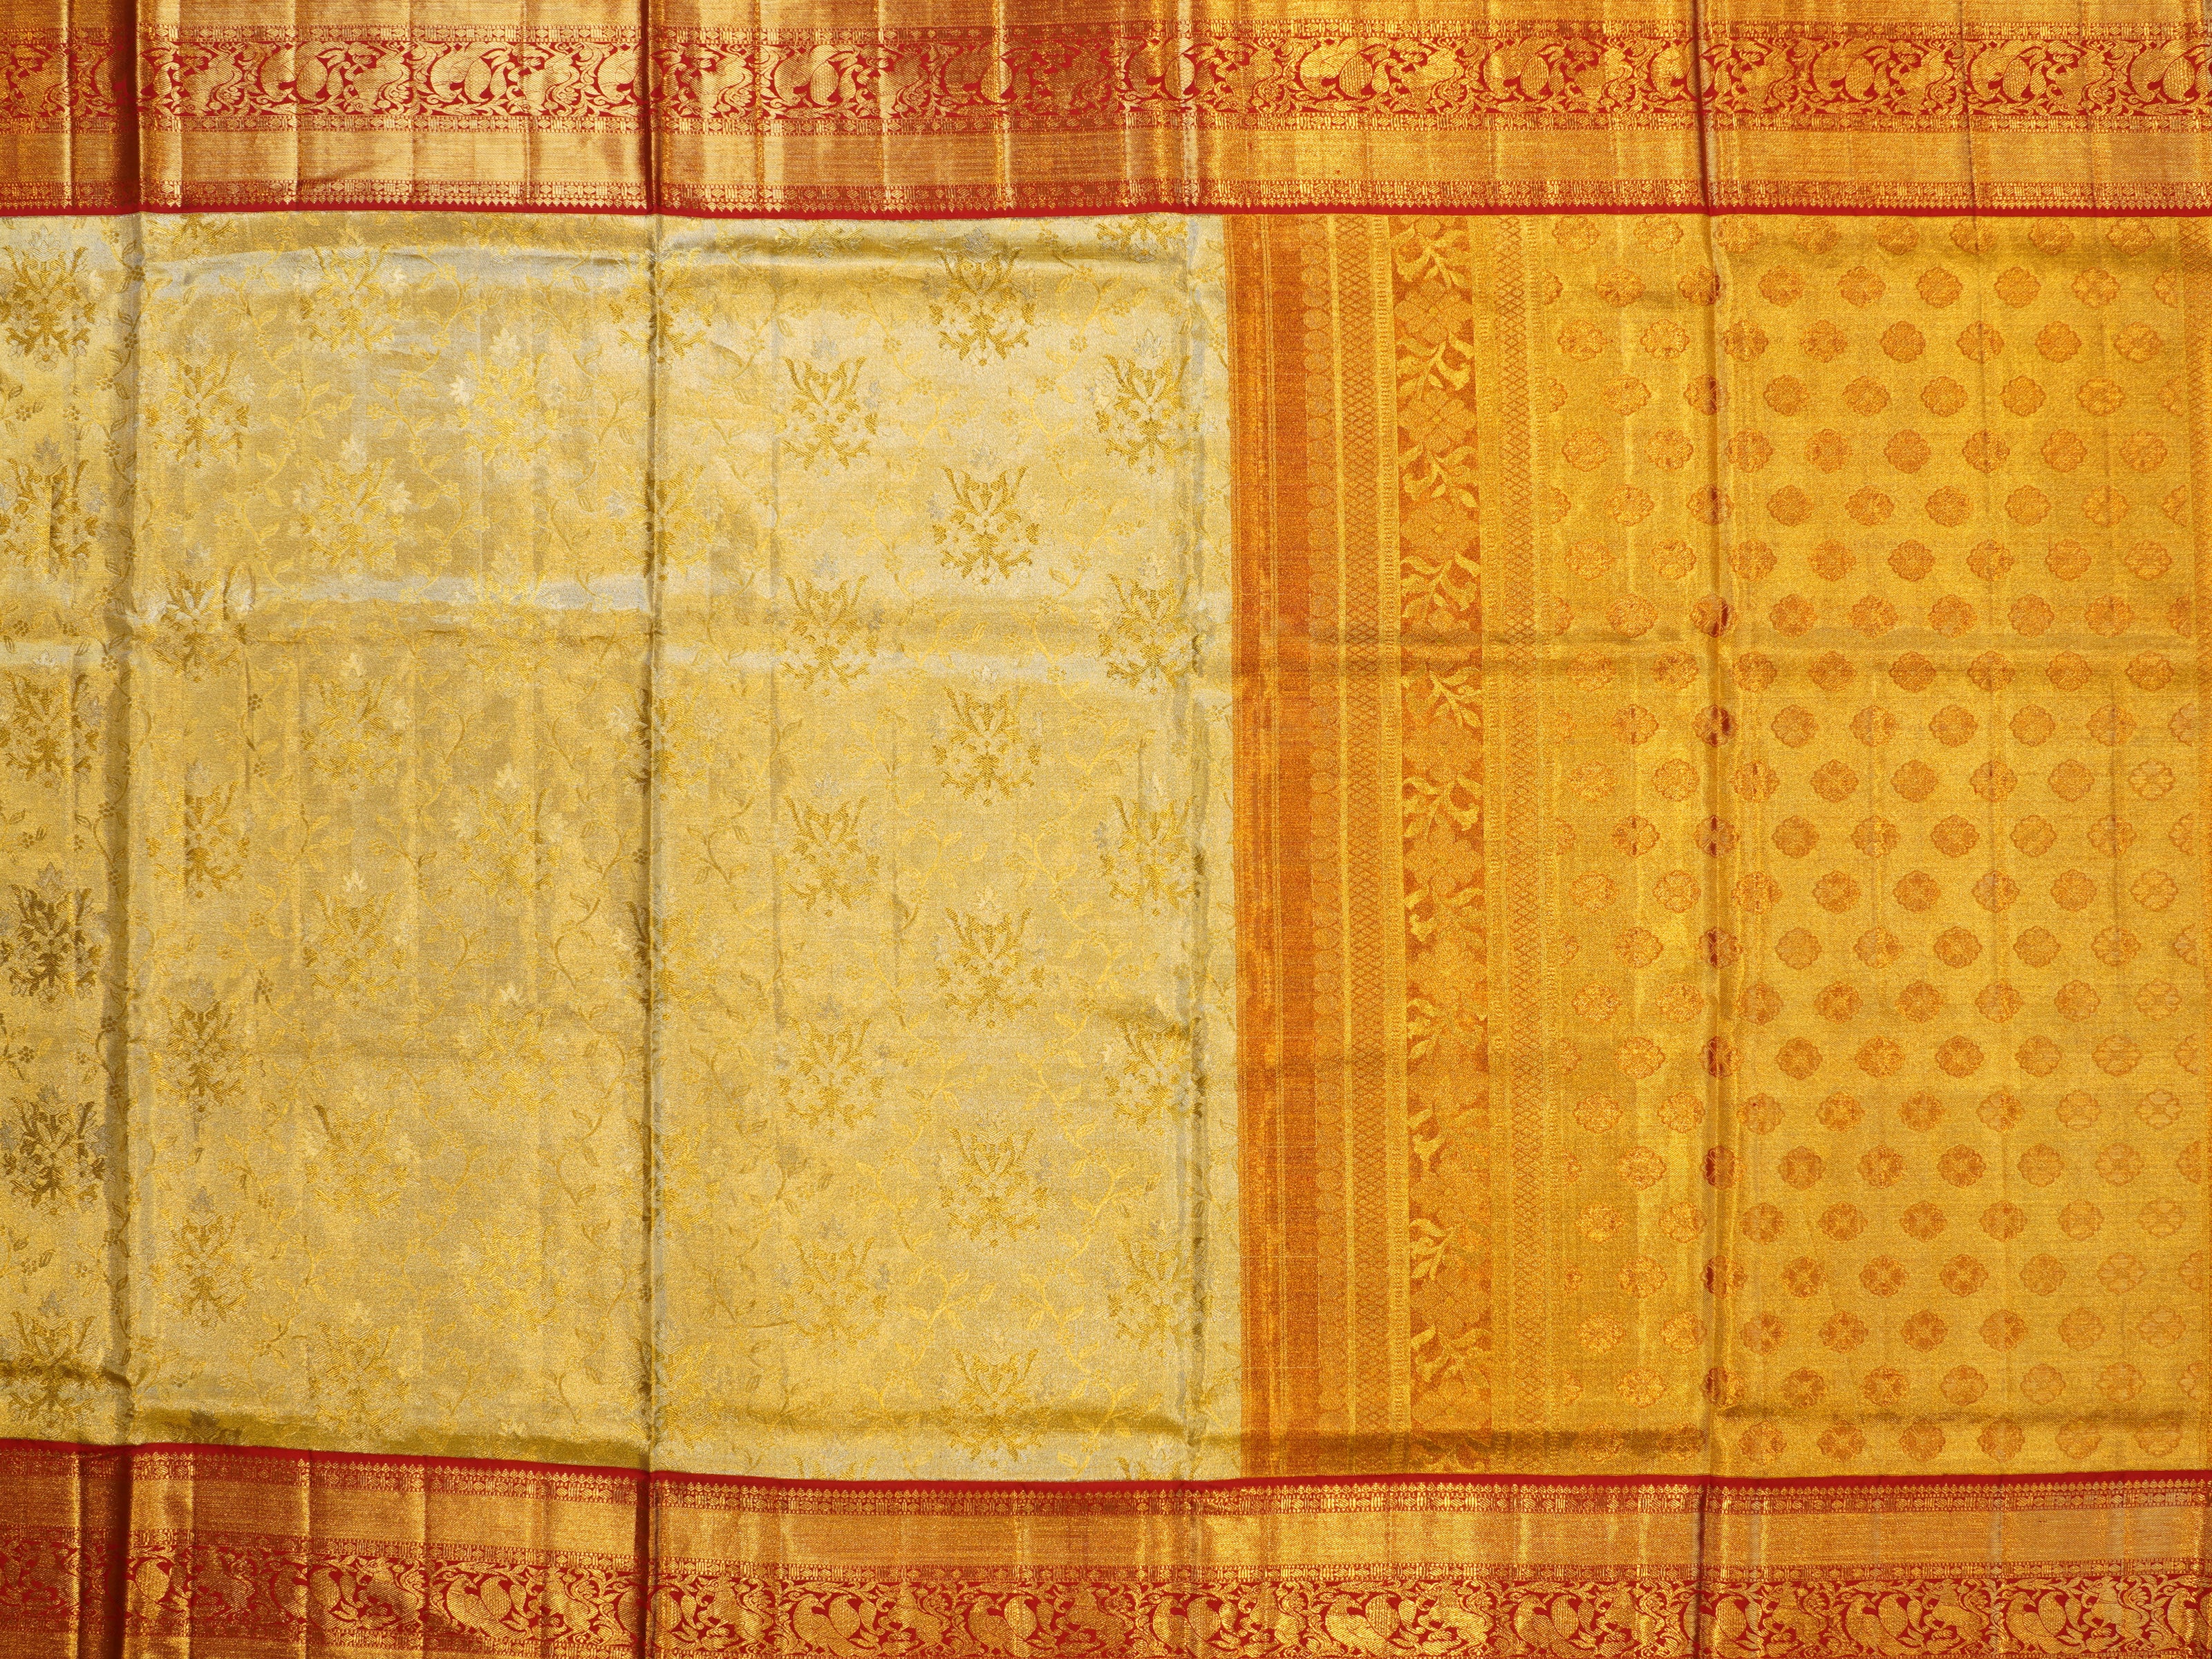 JSB-3258 | Gold & Maroon Kanchi Tissue Pattu Saree